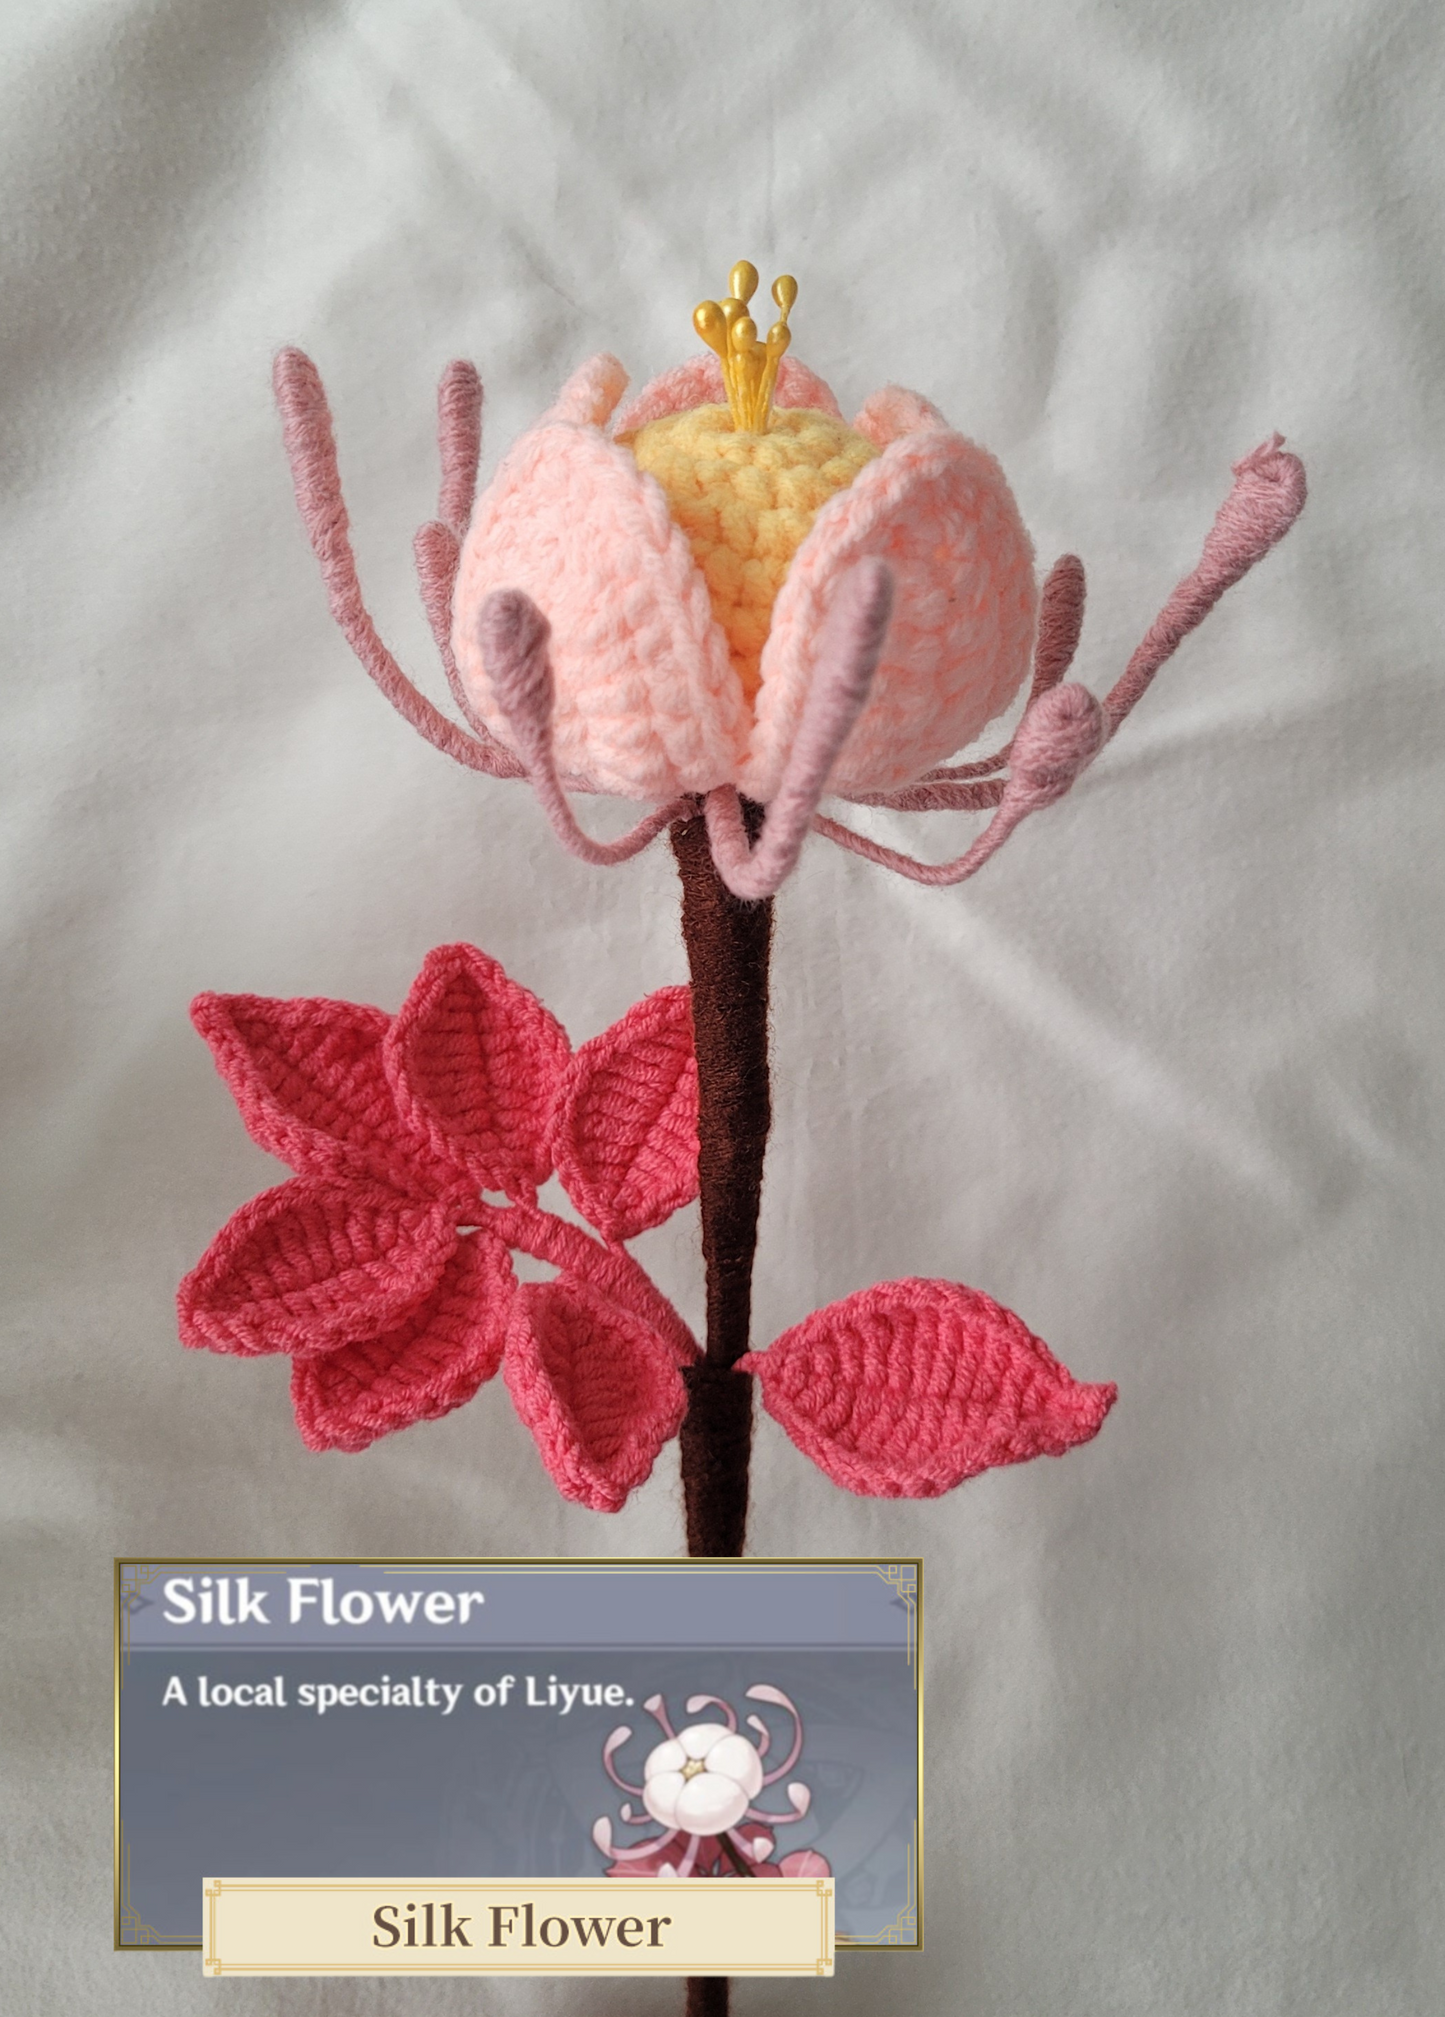 GI: Silk flower